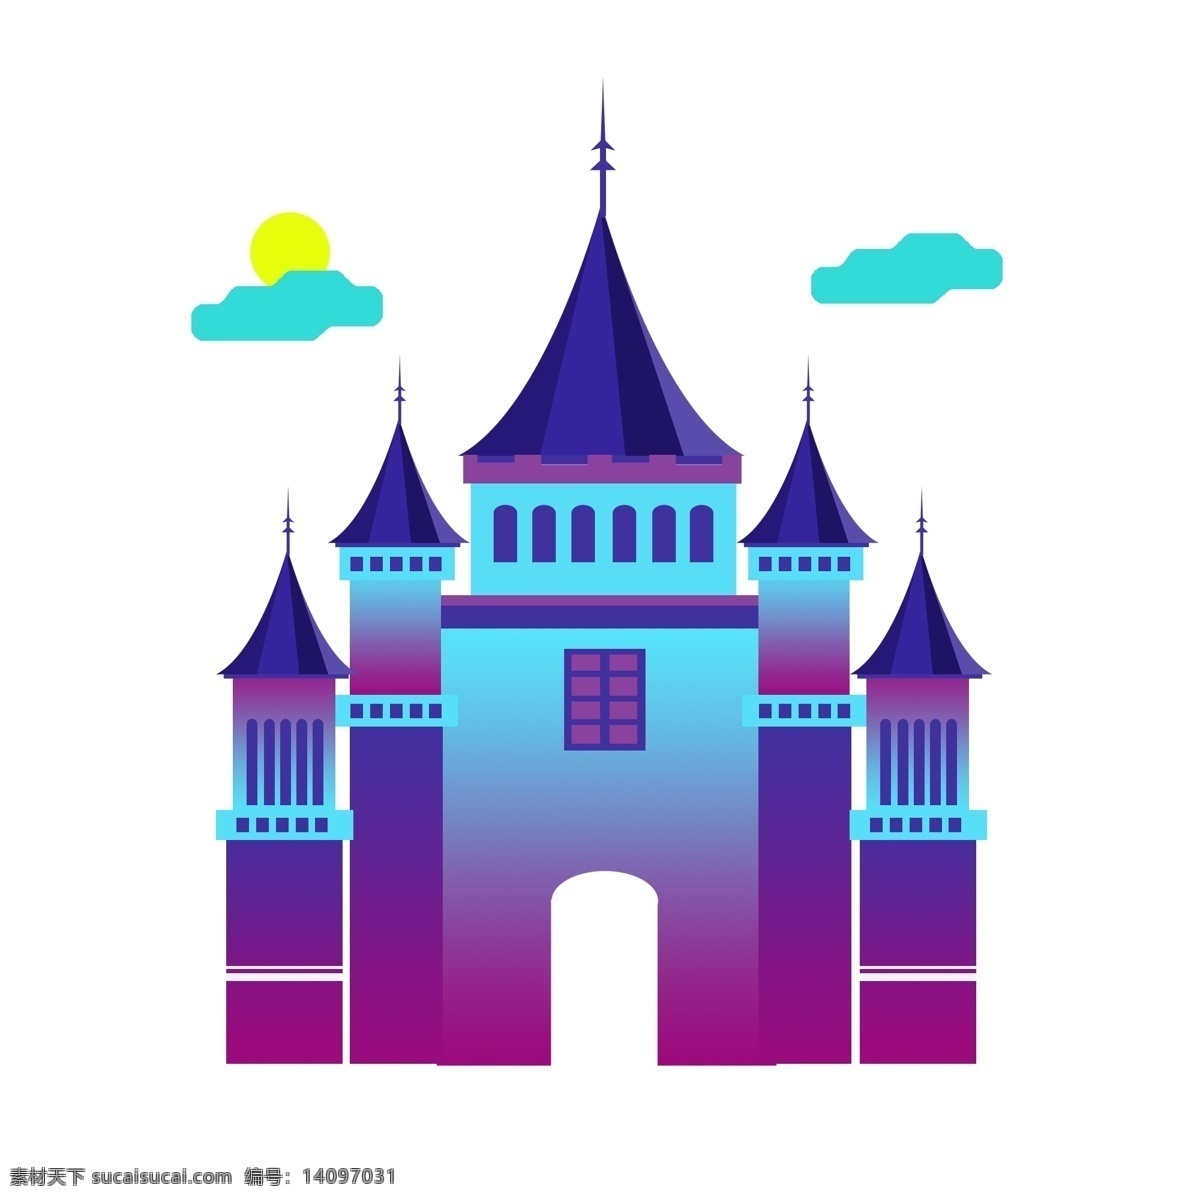 手绘 欧式 卡通 梦幻 城堡 建筑 糖果 渐 融 元素 欧式建筑 小场景 梦幻元素 卡通城堡 糖果色